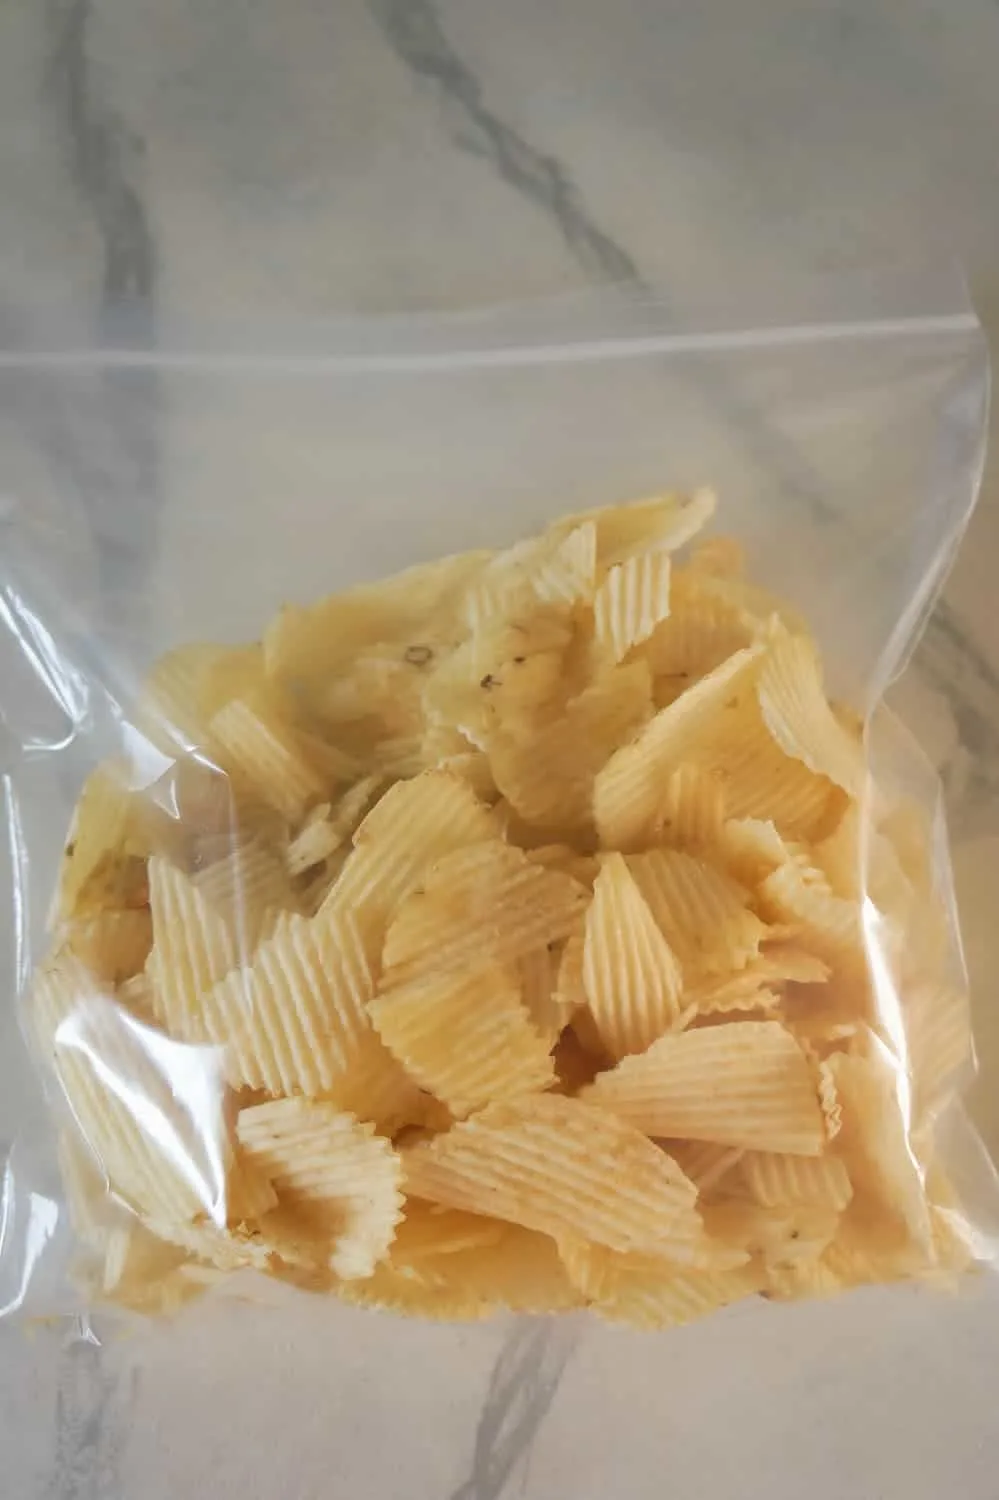 Ruffles potato chips in a Ziploc bag